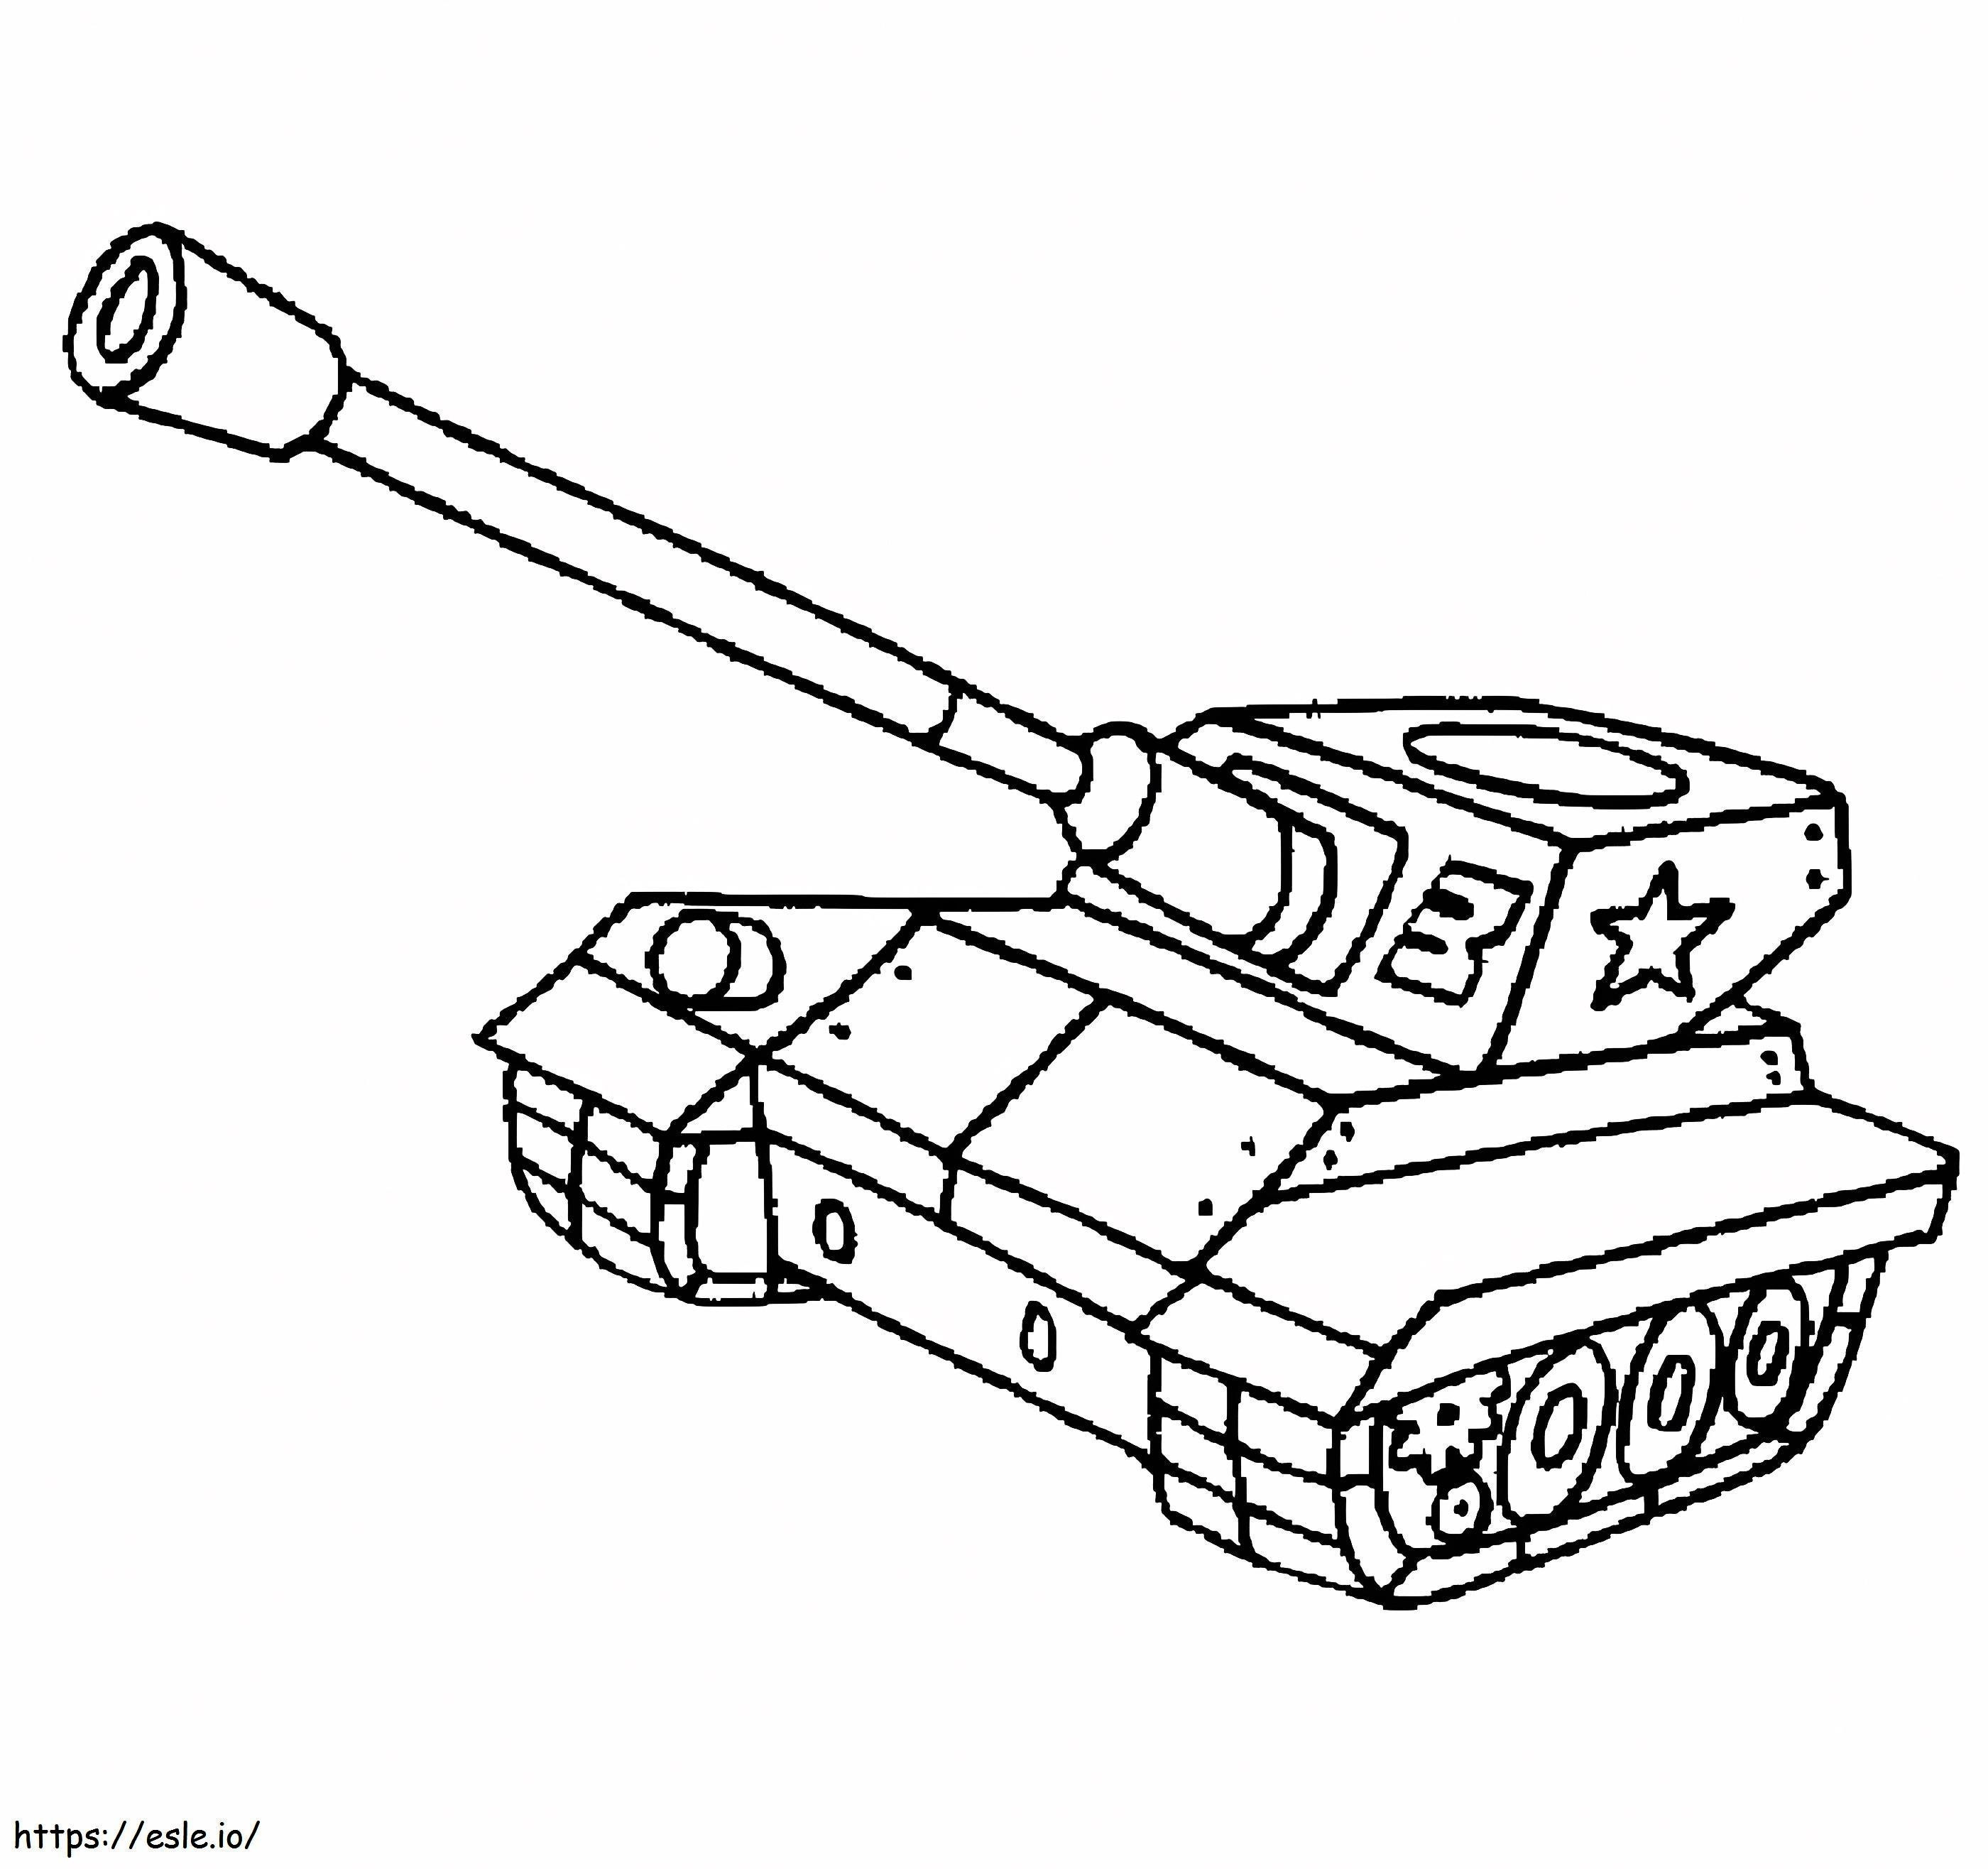 Winziger Panzer ausmalbilder